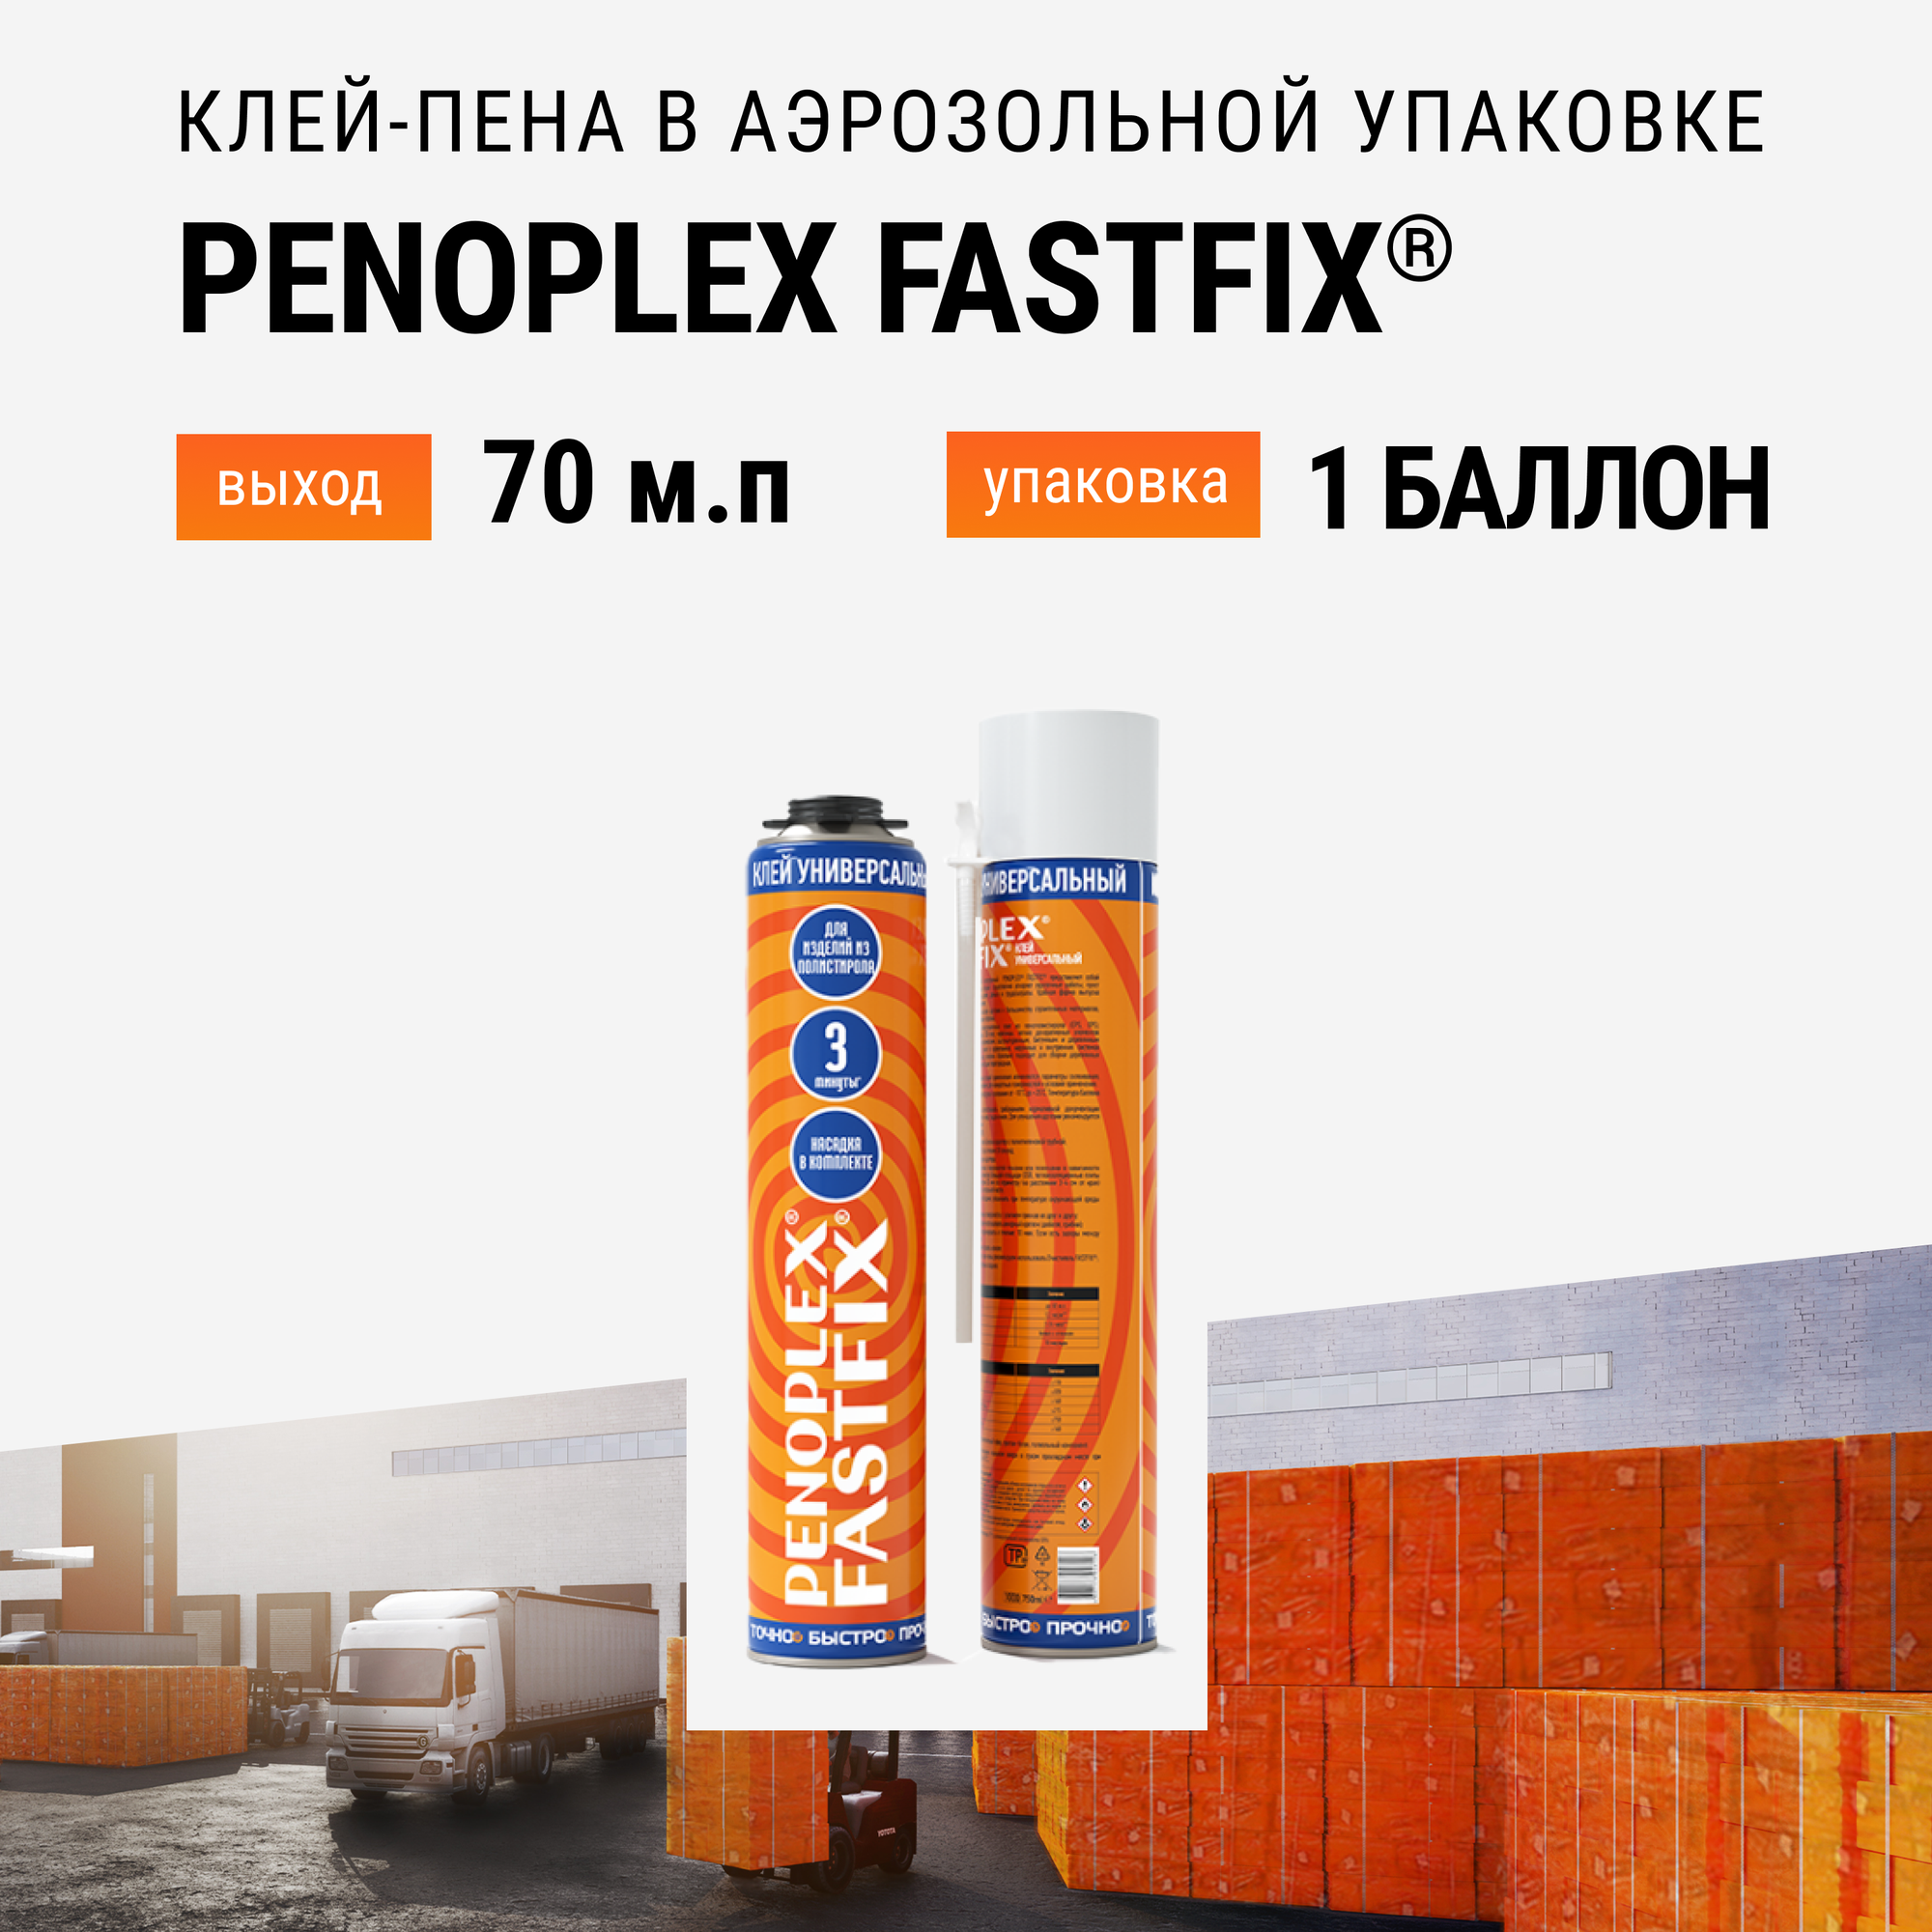 Клей-пена бытовая PENOPLEX FASTFIX в аэрозольной упаковке - 1 шт